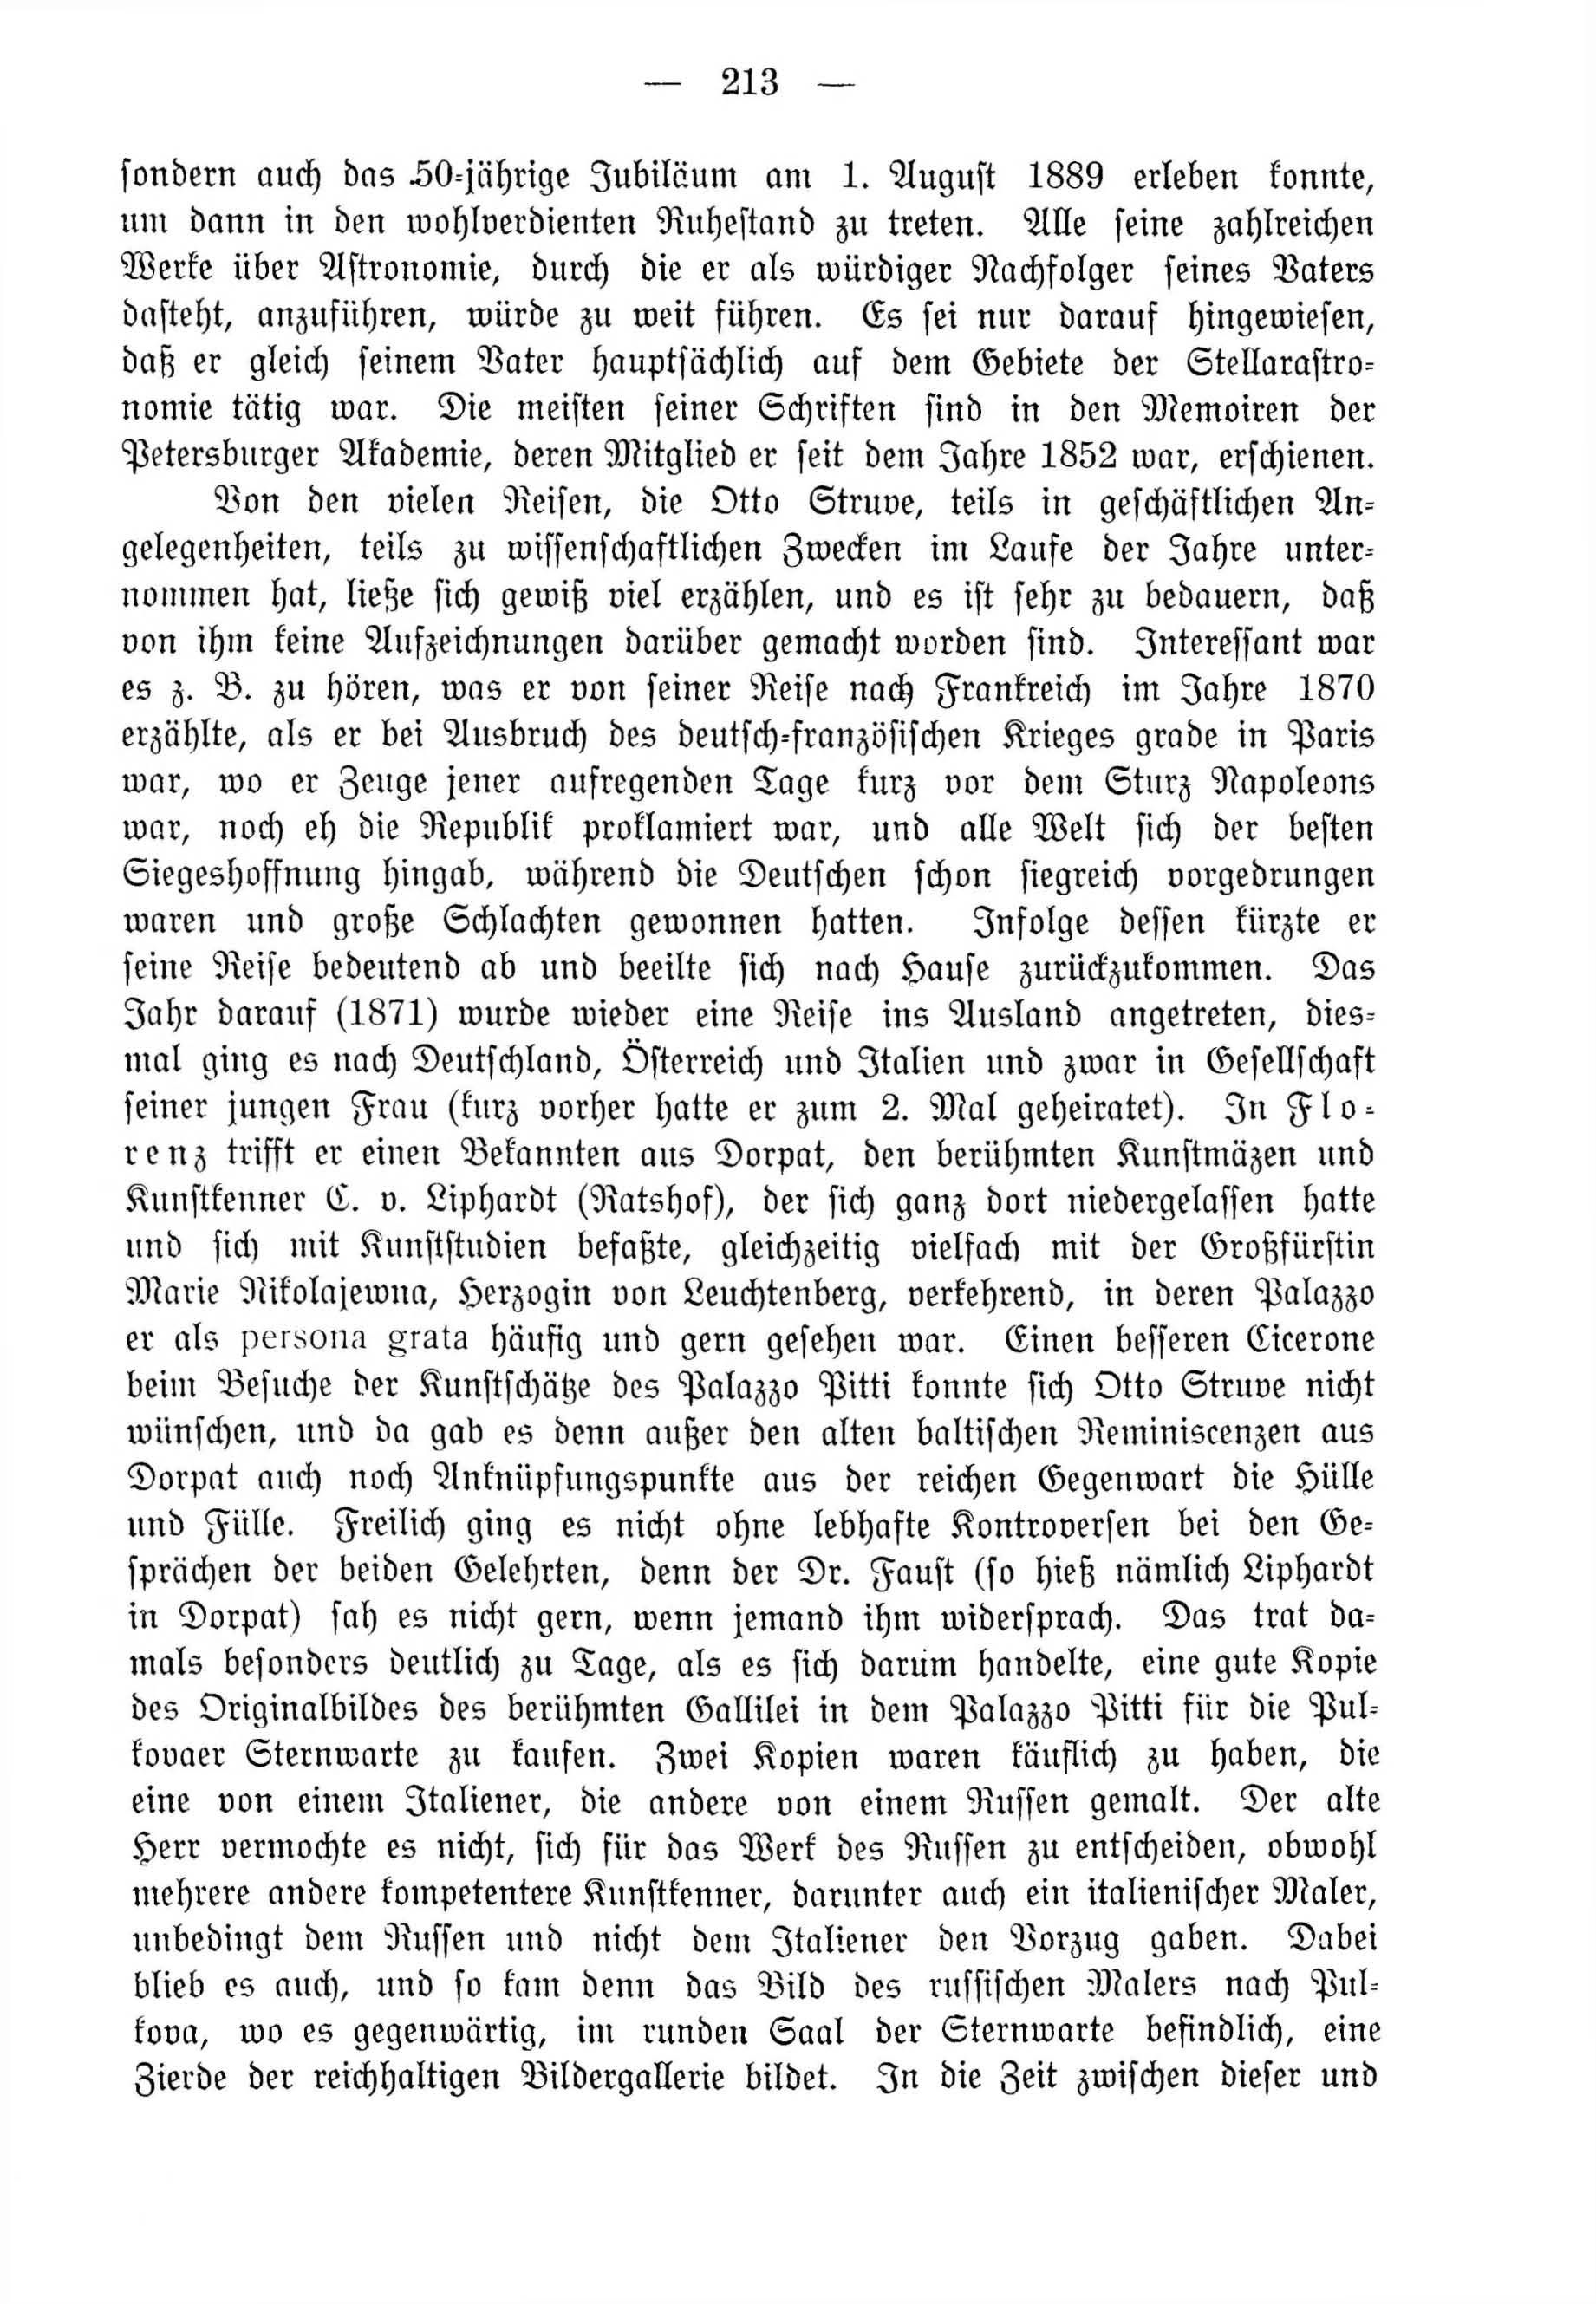 Deutsche Monatsschrift für Russland [4] (1915) | 213. (213) Main body of text